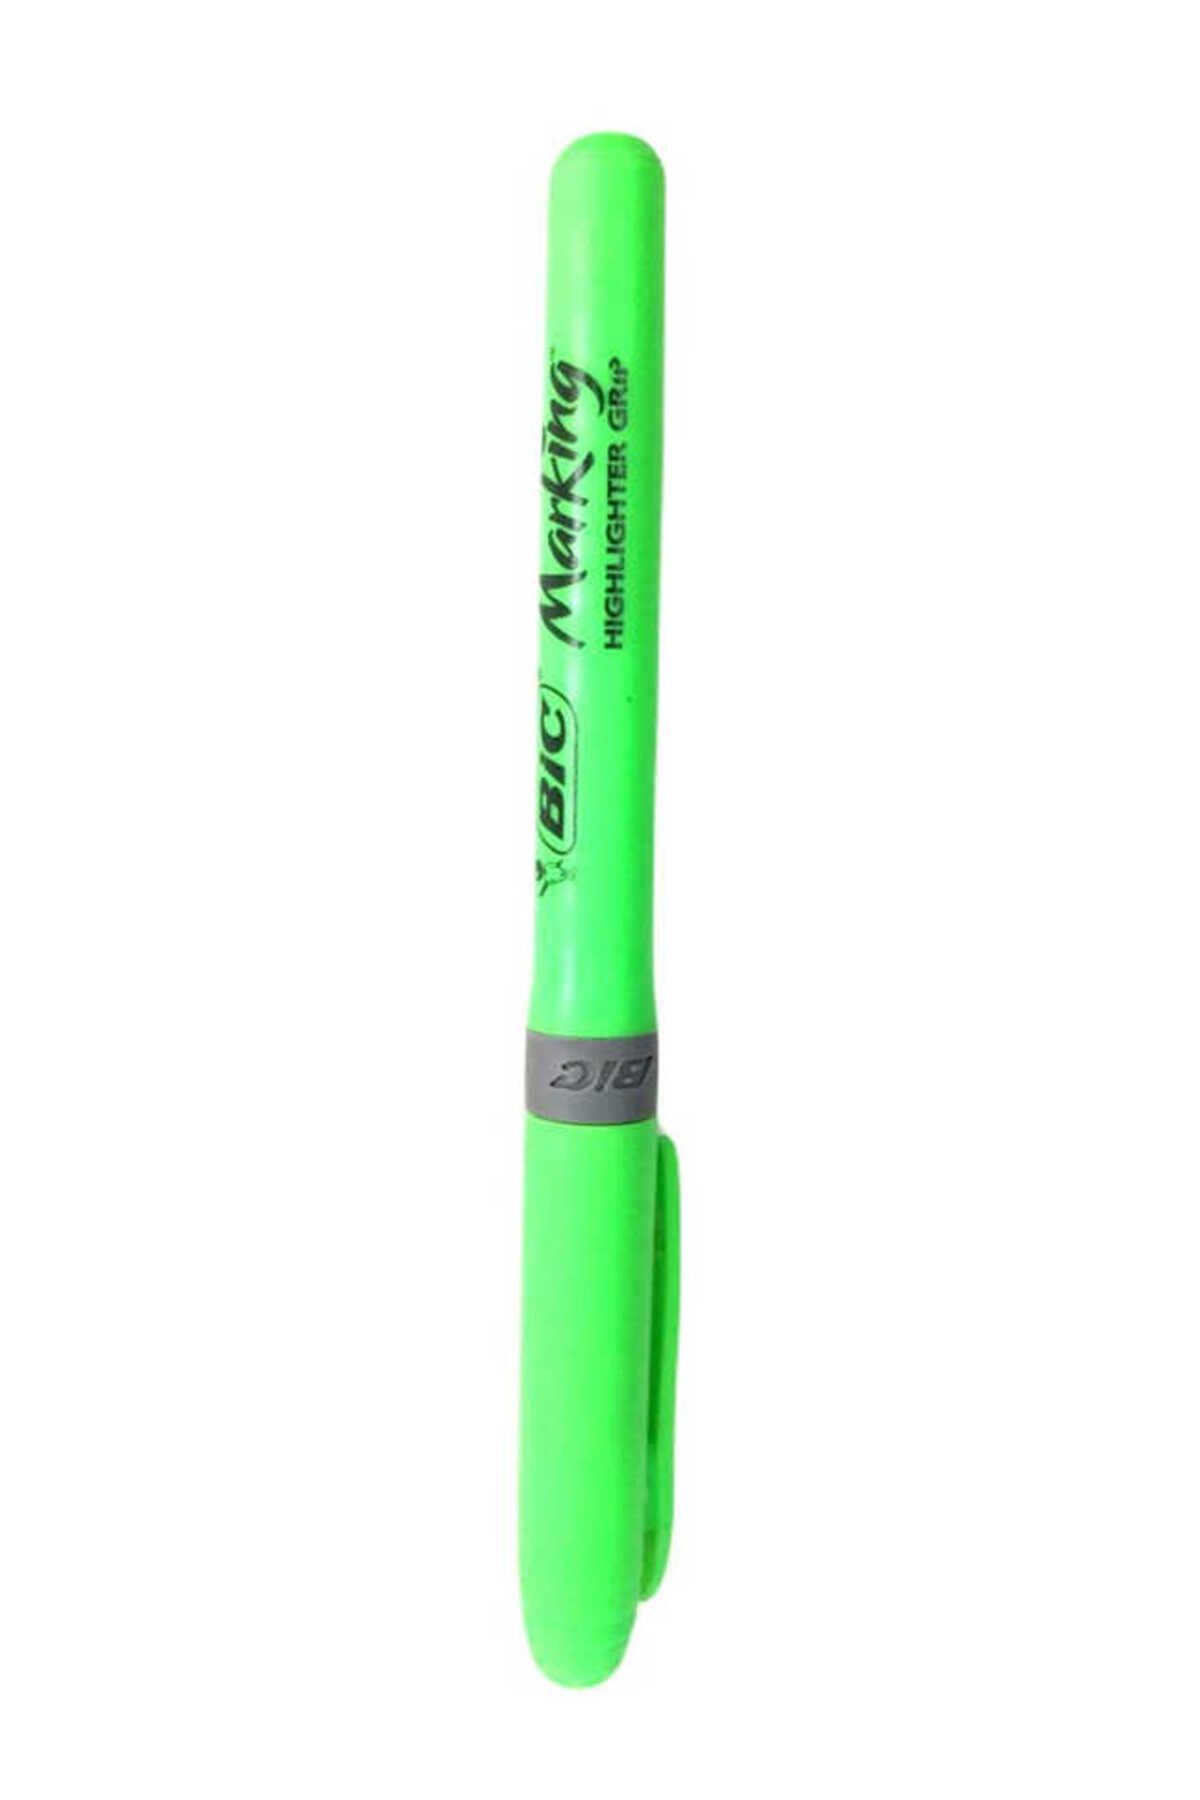 Bic Yeşil Kalem Tipi Fosforlu Kalem 811932